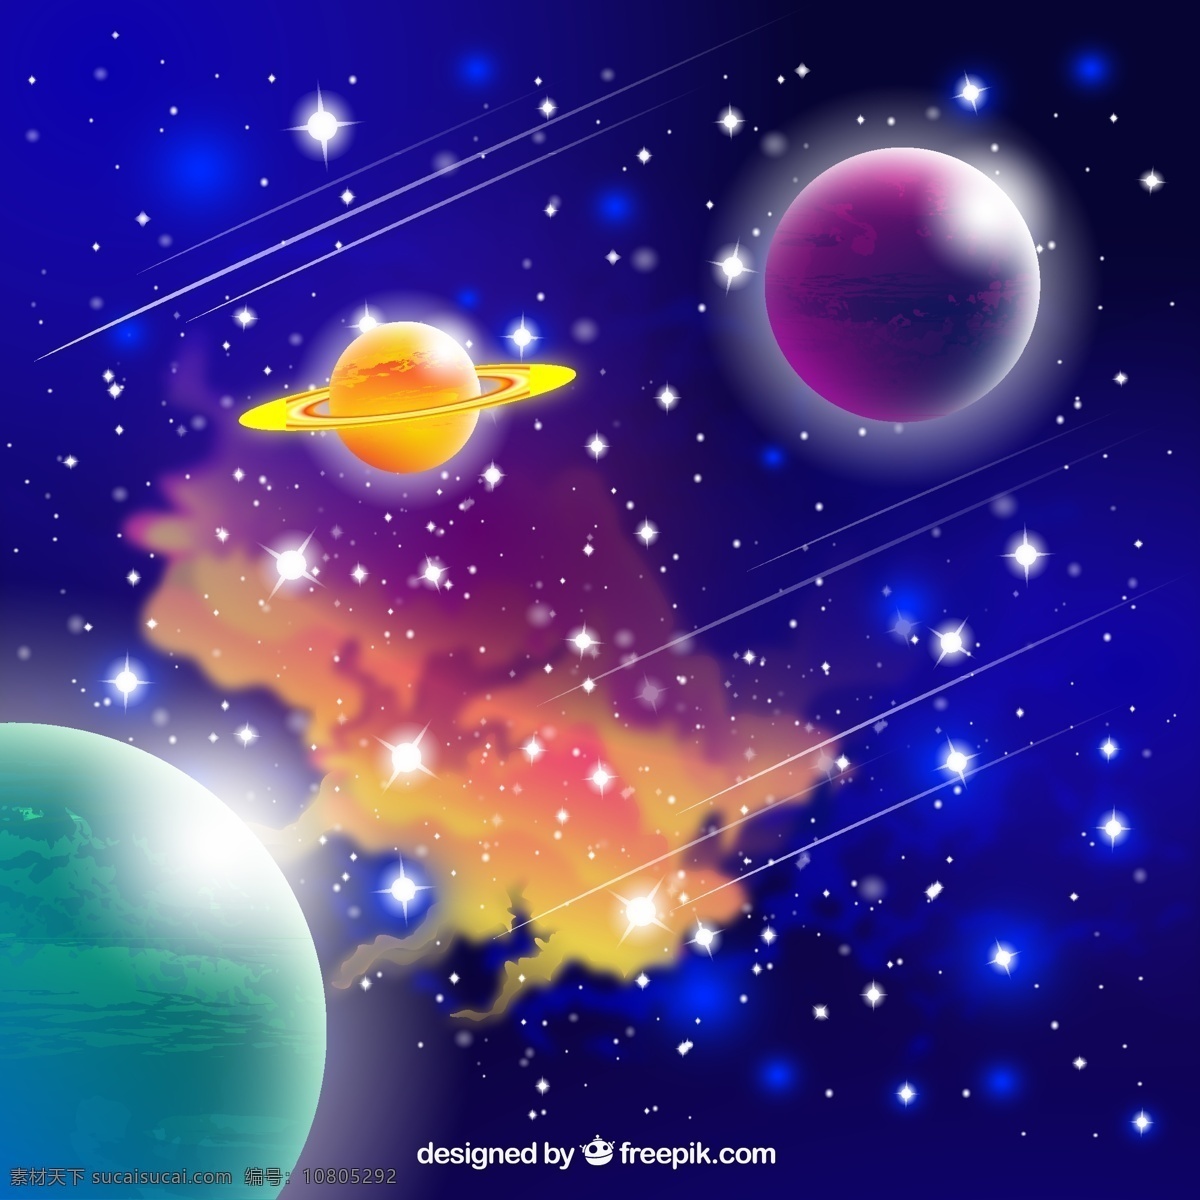 宇宙 行星 恒星 太空 银河 科幻 类行星 奇幻 星球 自然景观 自然风光 平面素材